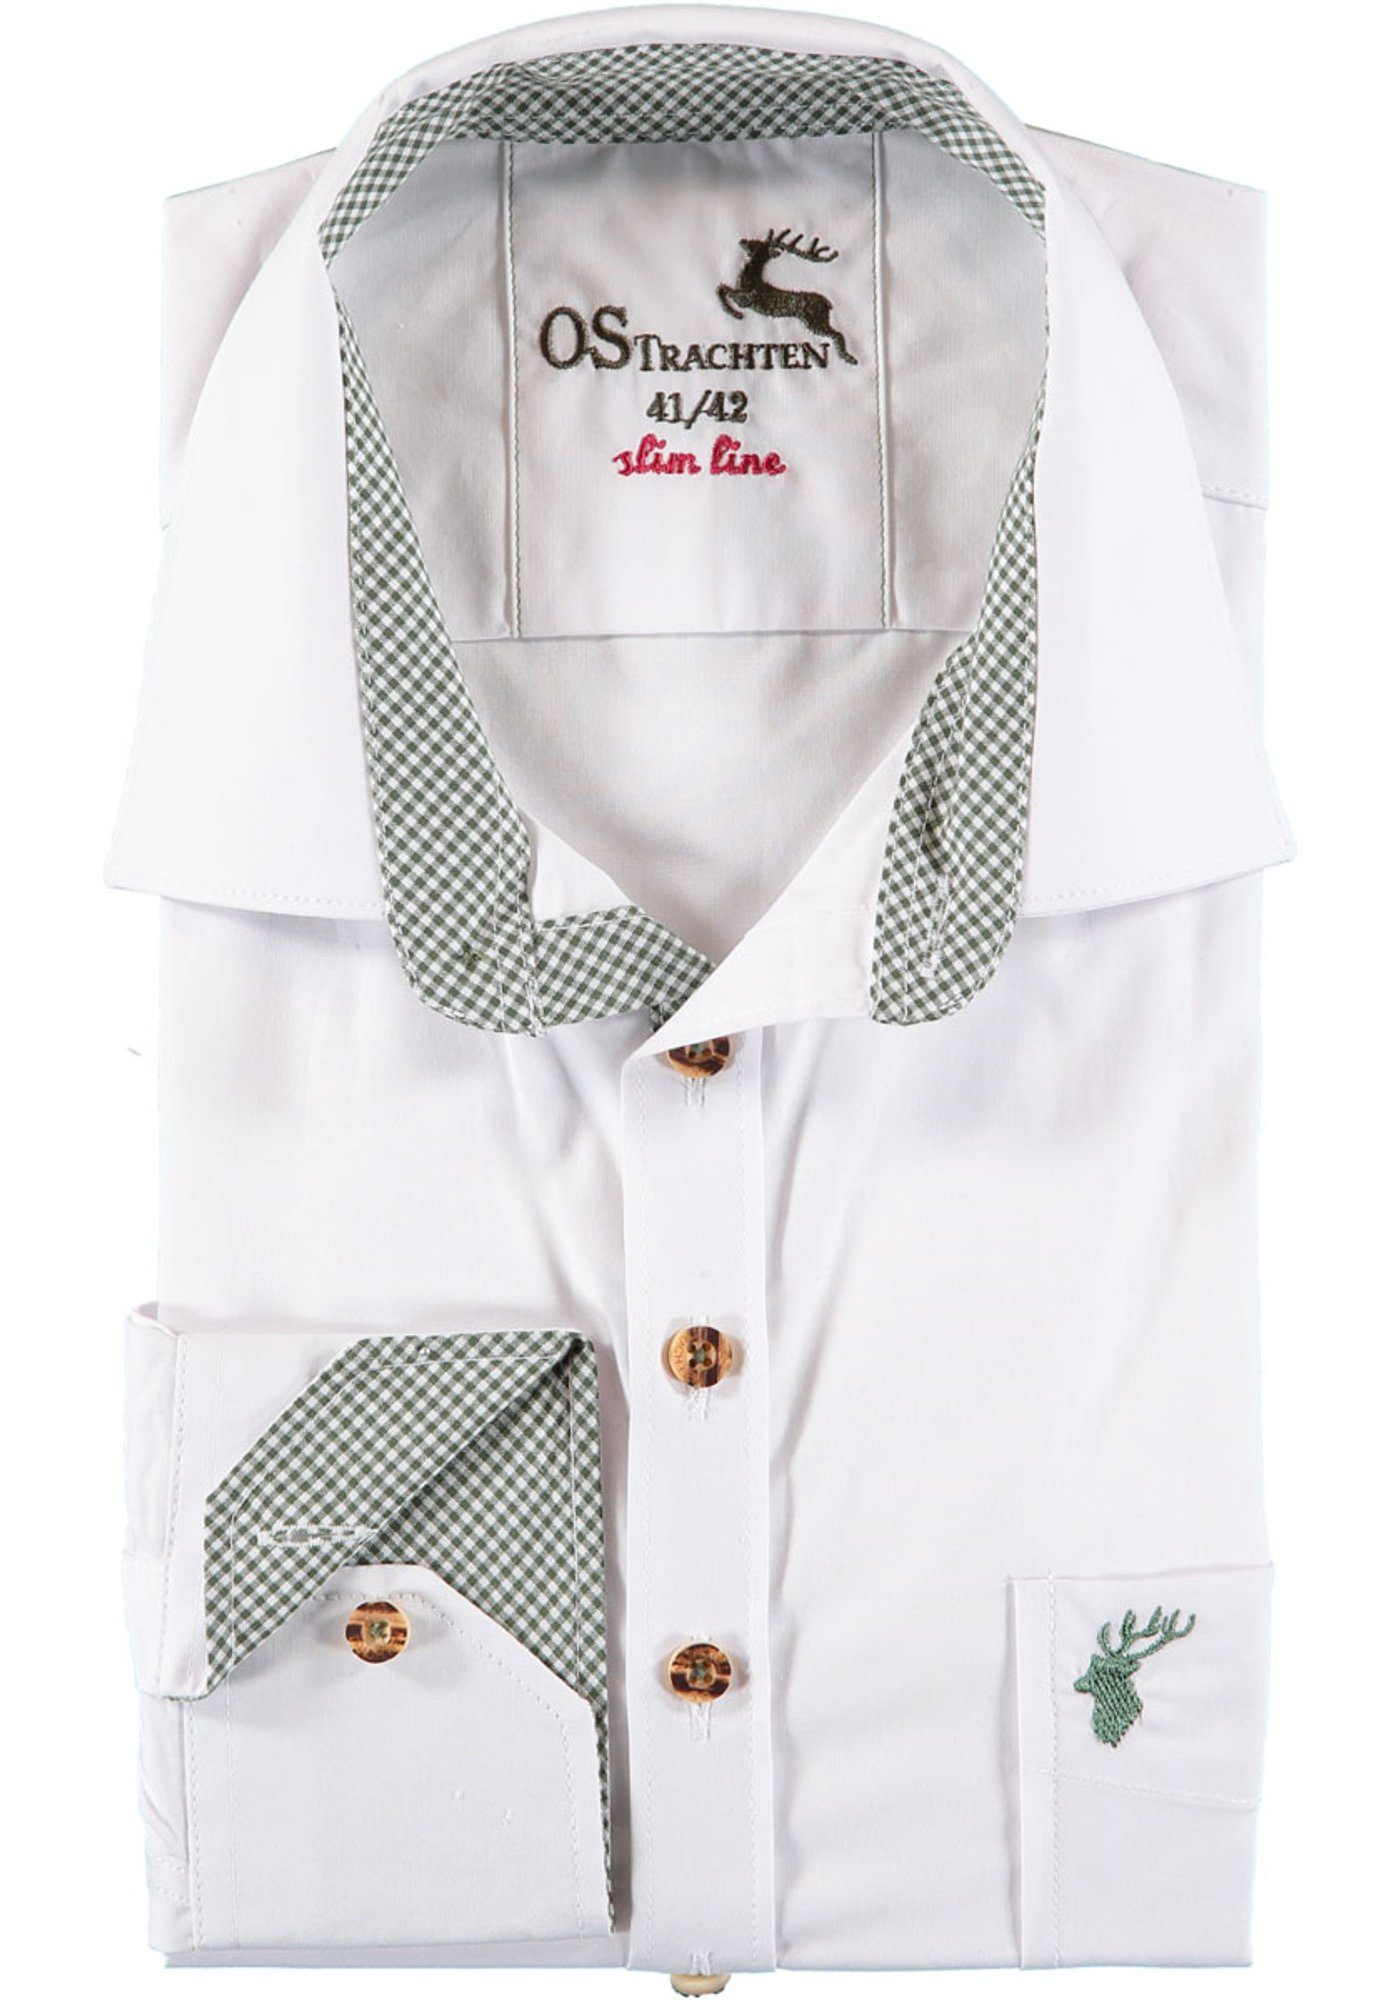 Trachtenhemd Brusttasche auf Oqqaya OS-Trachten Herren mit Langarmhemd der Hirsch-Stickerei